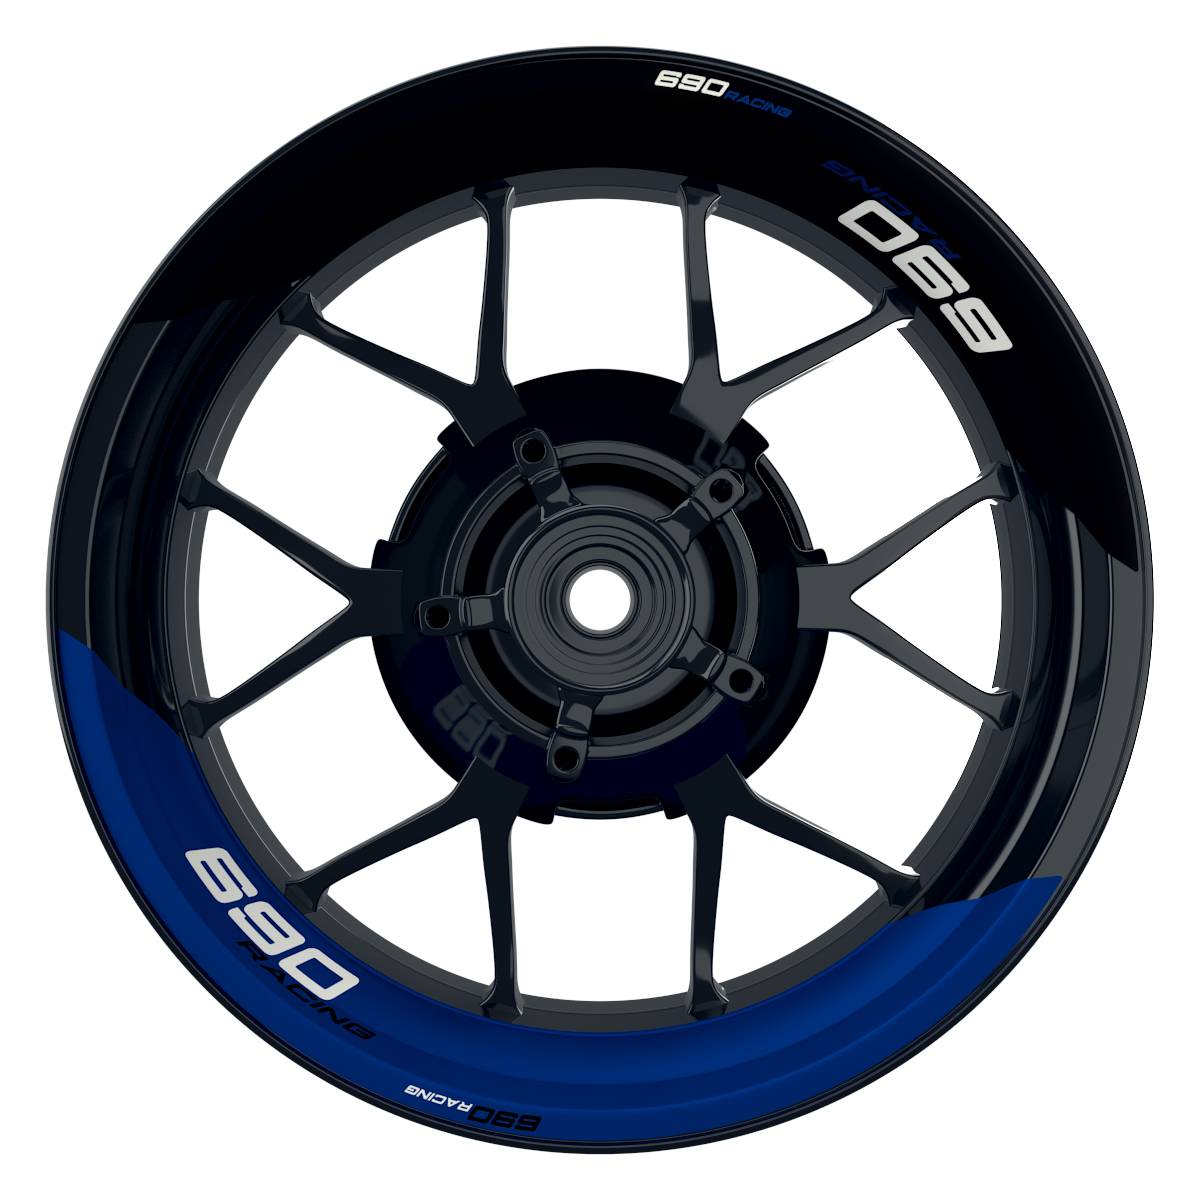 KTM Racing 690 halb halb schwarz blau Frontansicht